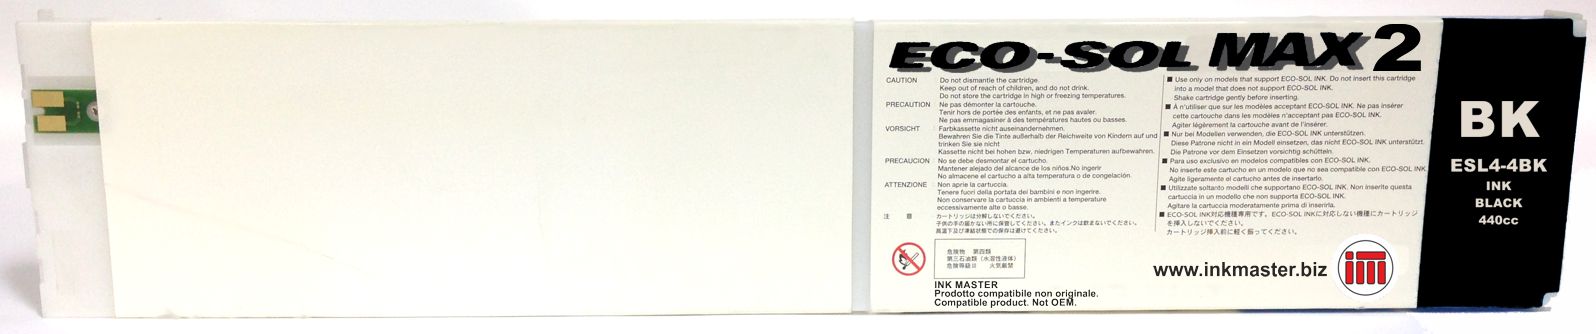 Cartuccia rigenerata ROLAND ECO-SOL MAX 2 BLACK per ROLAND BN-20 RF-640 SP-300i SP-540i VS-300i VS-540i VS-640i XF-640 XR-640